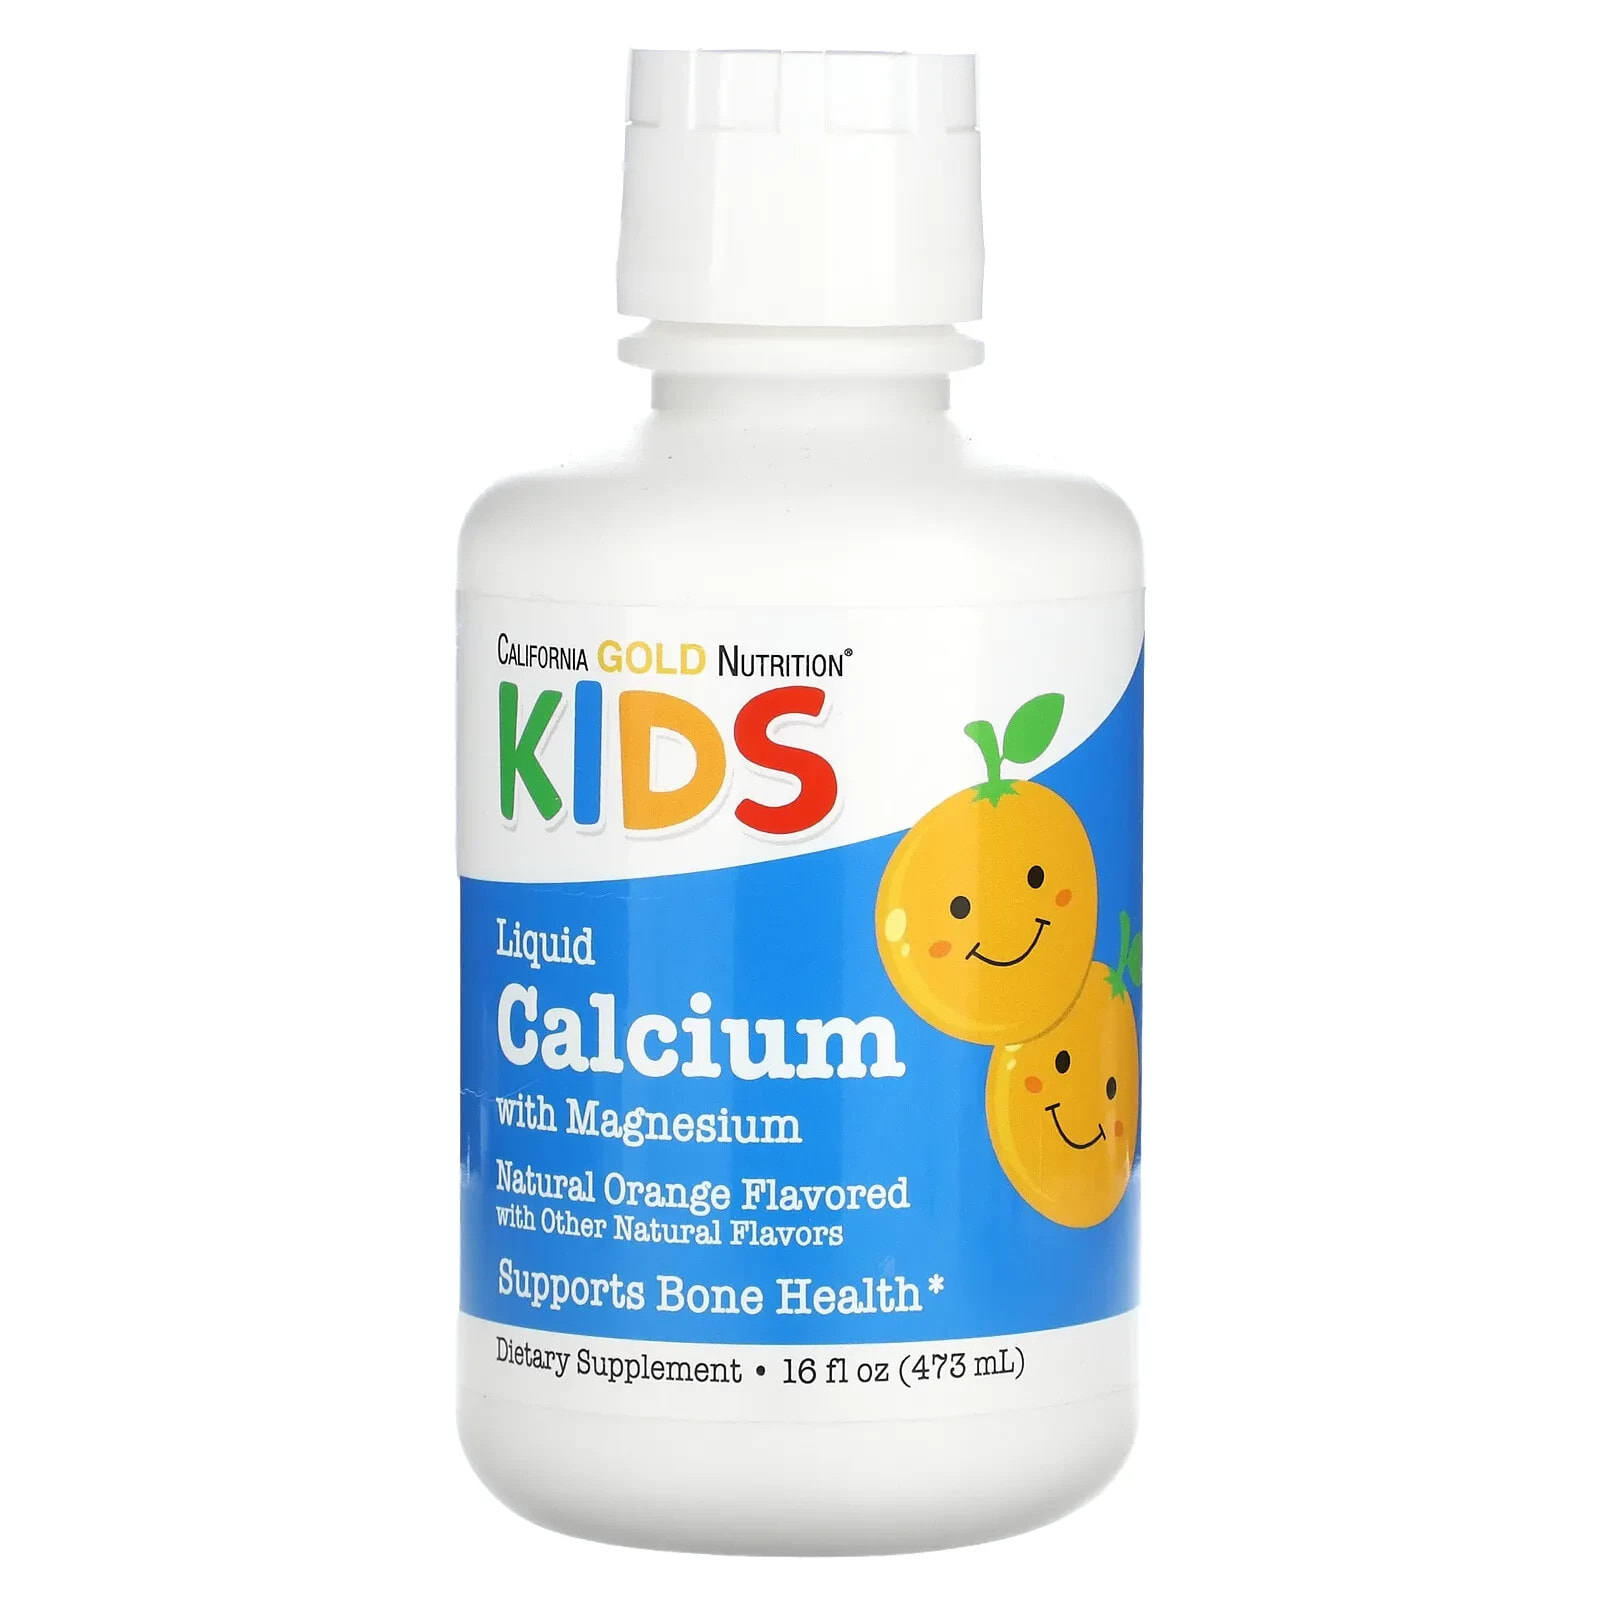 California Gold Nutrition, Children's Liquid Calcium with Magnesium, Orange, 16 fl oz (473 ml)